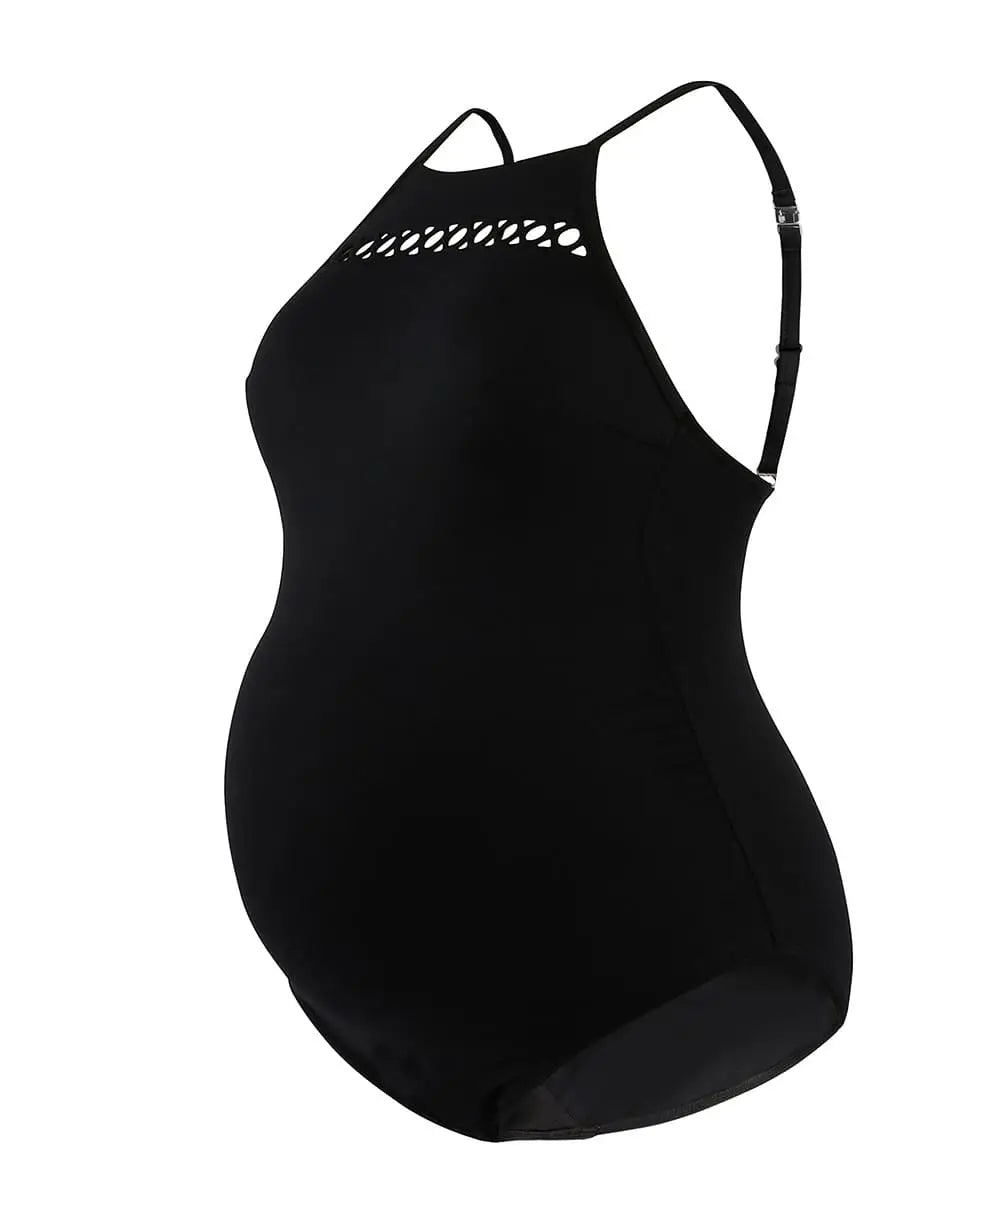 Maternity Swimsuit Manitoba Sage - Cache Coeur – Cache Cœur US